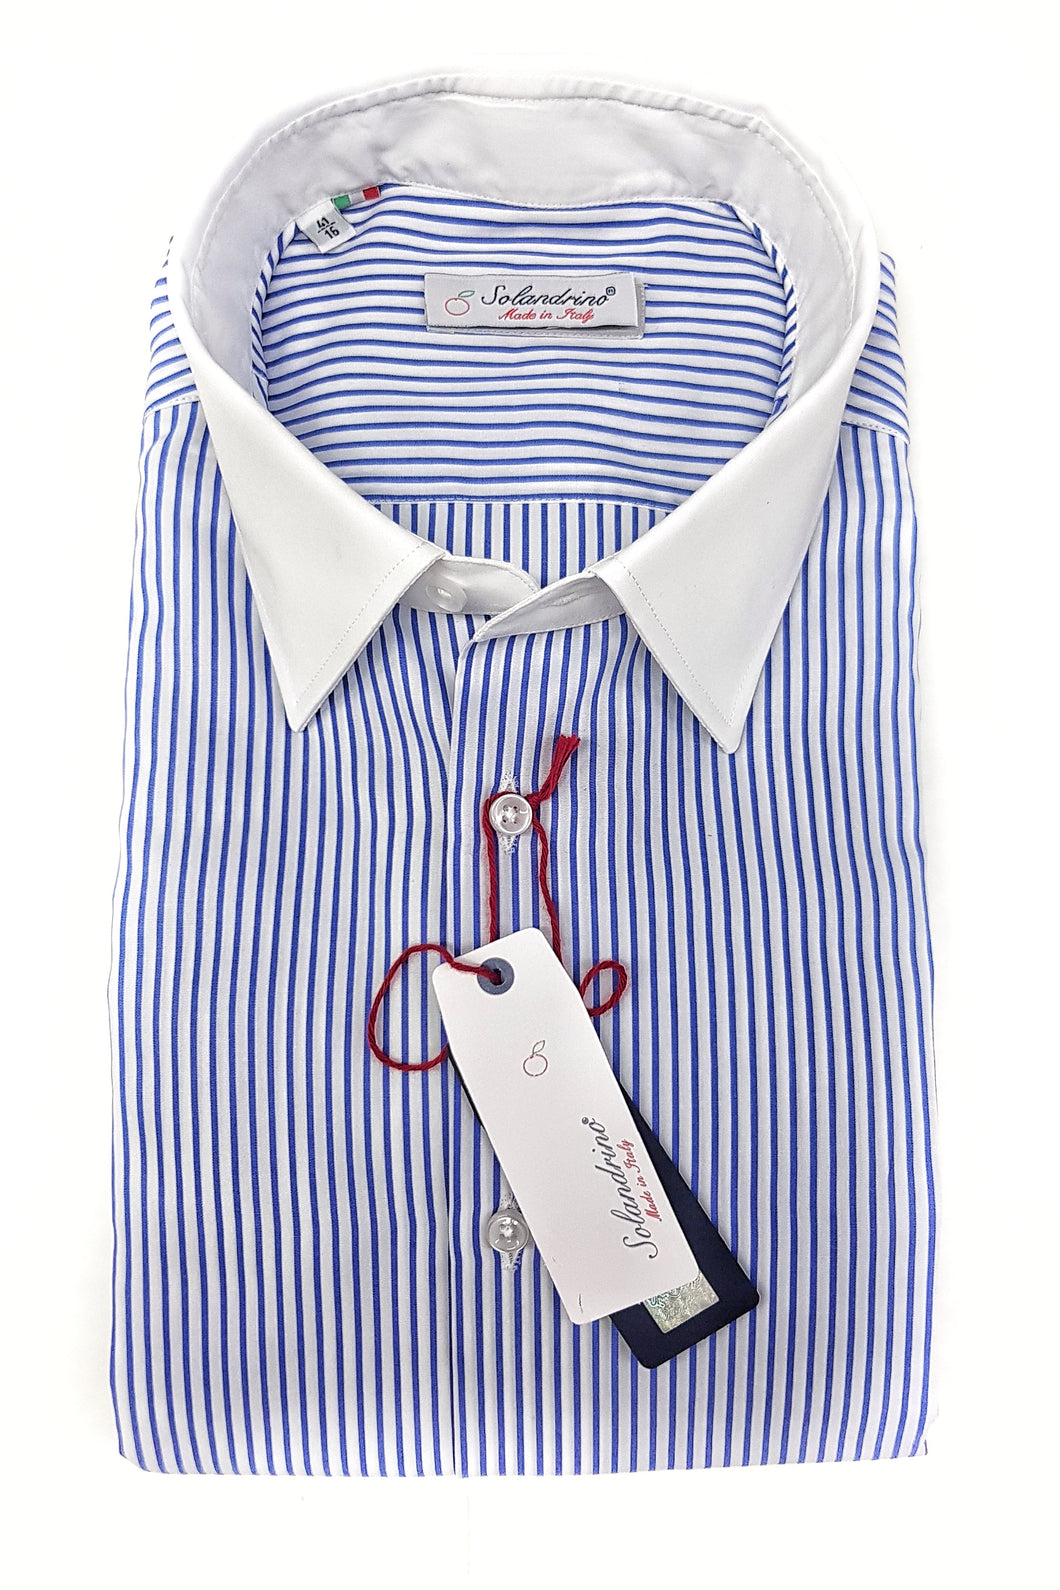 Camicia Club Man collo e polso bianco su rigato bianco azzurro made in Italy stripe shirt